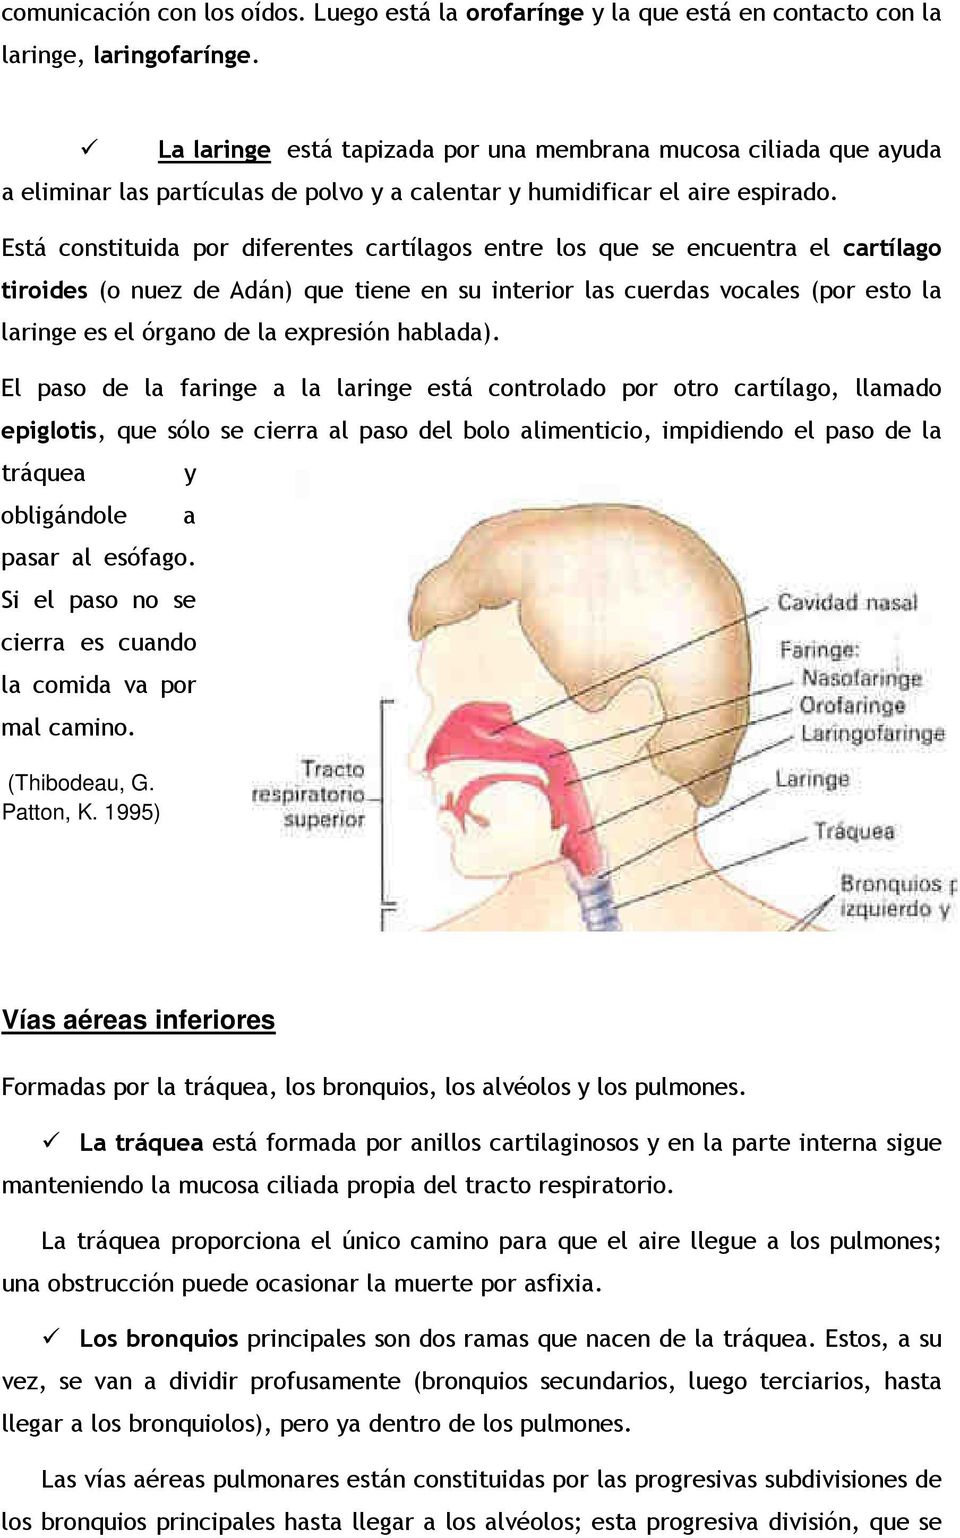 Está constituida por diferentes cartílagos entre los que se encuentra el cartílago tiroides (o nuez de Adán) que tiene en su interior las cuerdas vocales (por esto la laringe es el órgano de la